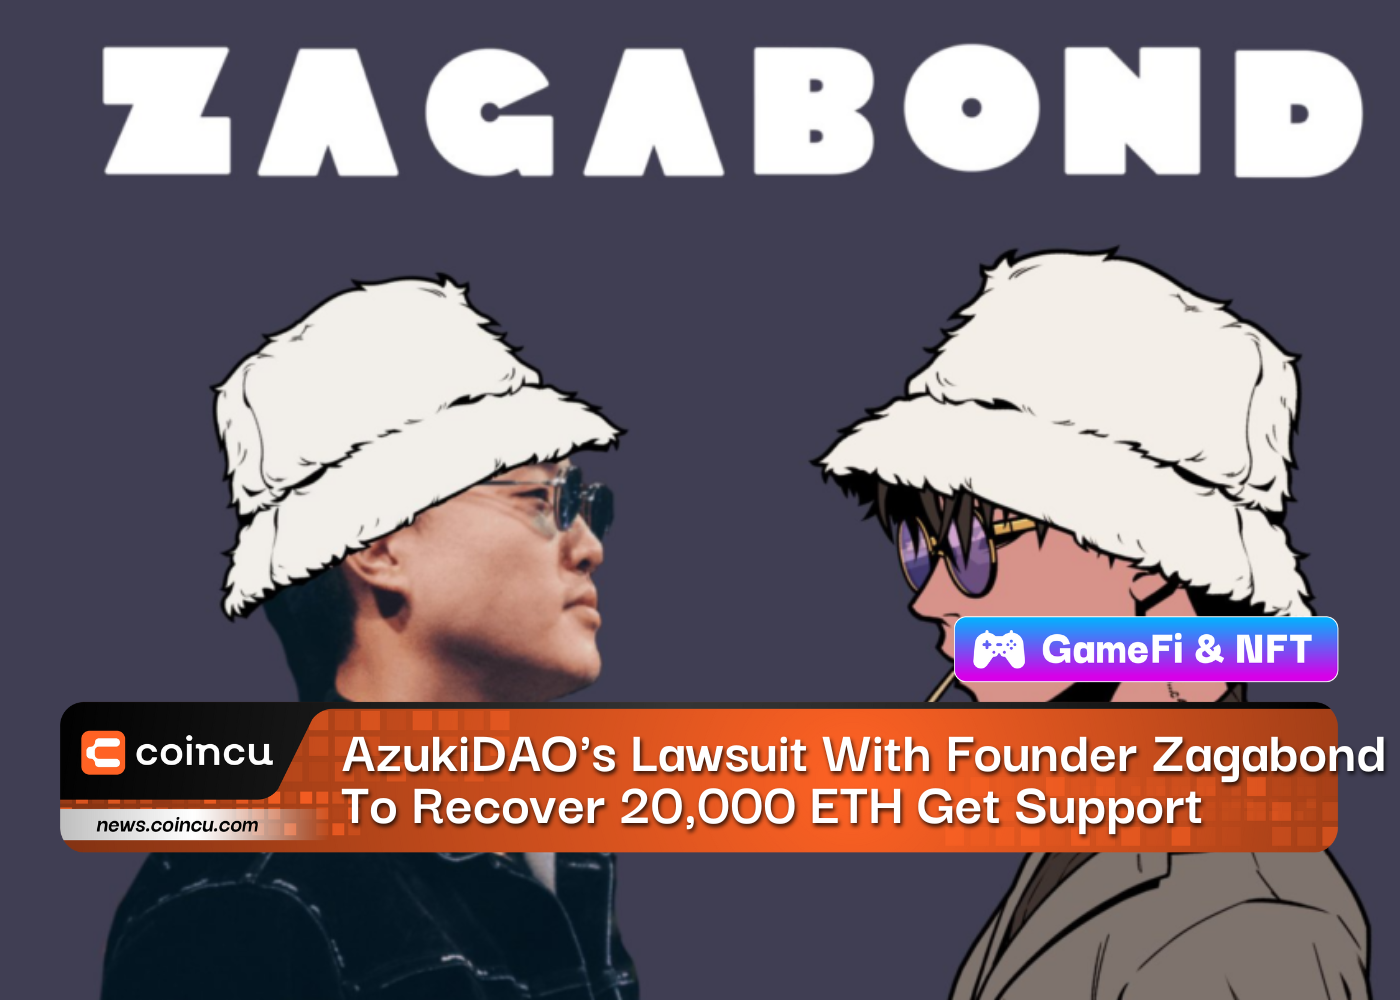 Processo da AzukiDAO com o fundador Zagabond para recuperar 20,000 ETH Obtenha suporte